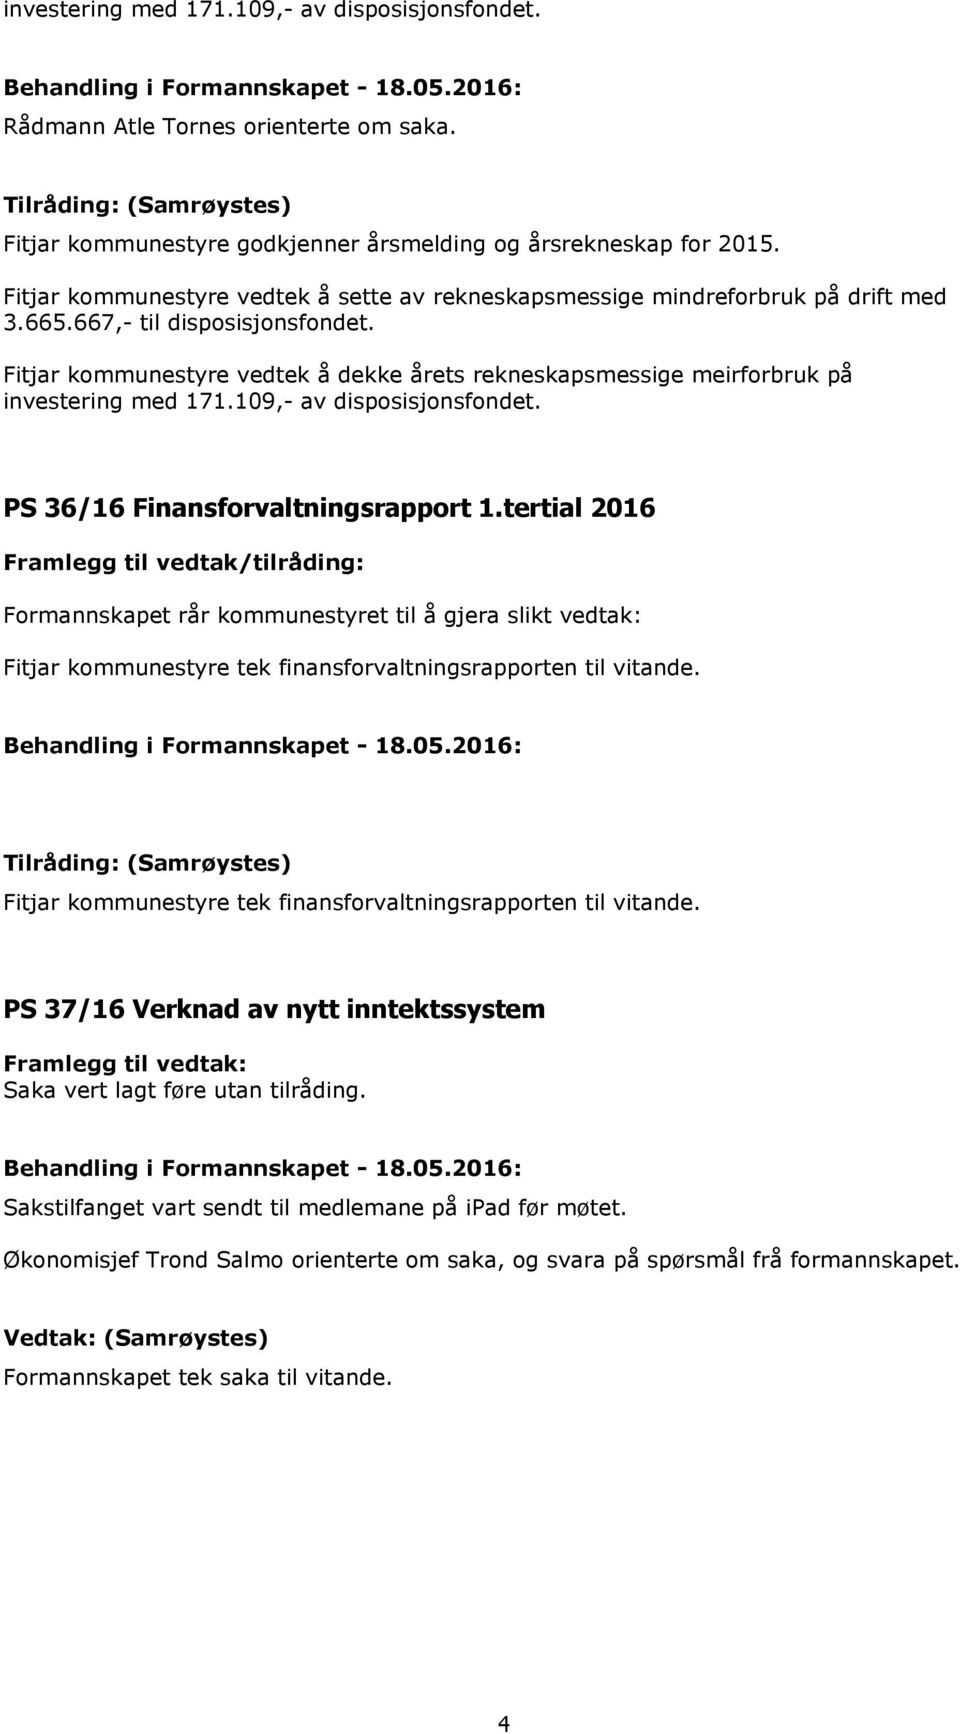 Fitjar kommunestyre vedtek å dekke årets rekneskapsmessige meirforbruk på investering med 171.109,- av disposisjonsfondet. PS 36/16 Finansforvaltningsrapport 1.